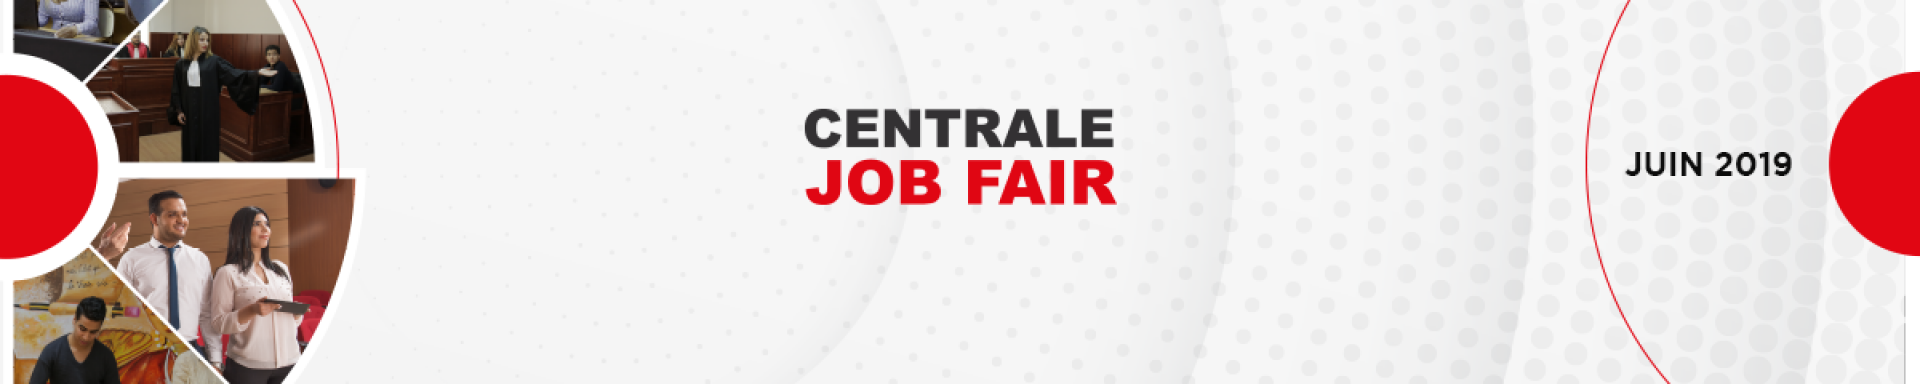 Centrale Job Fair 